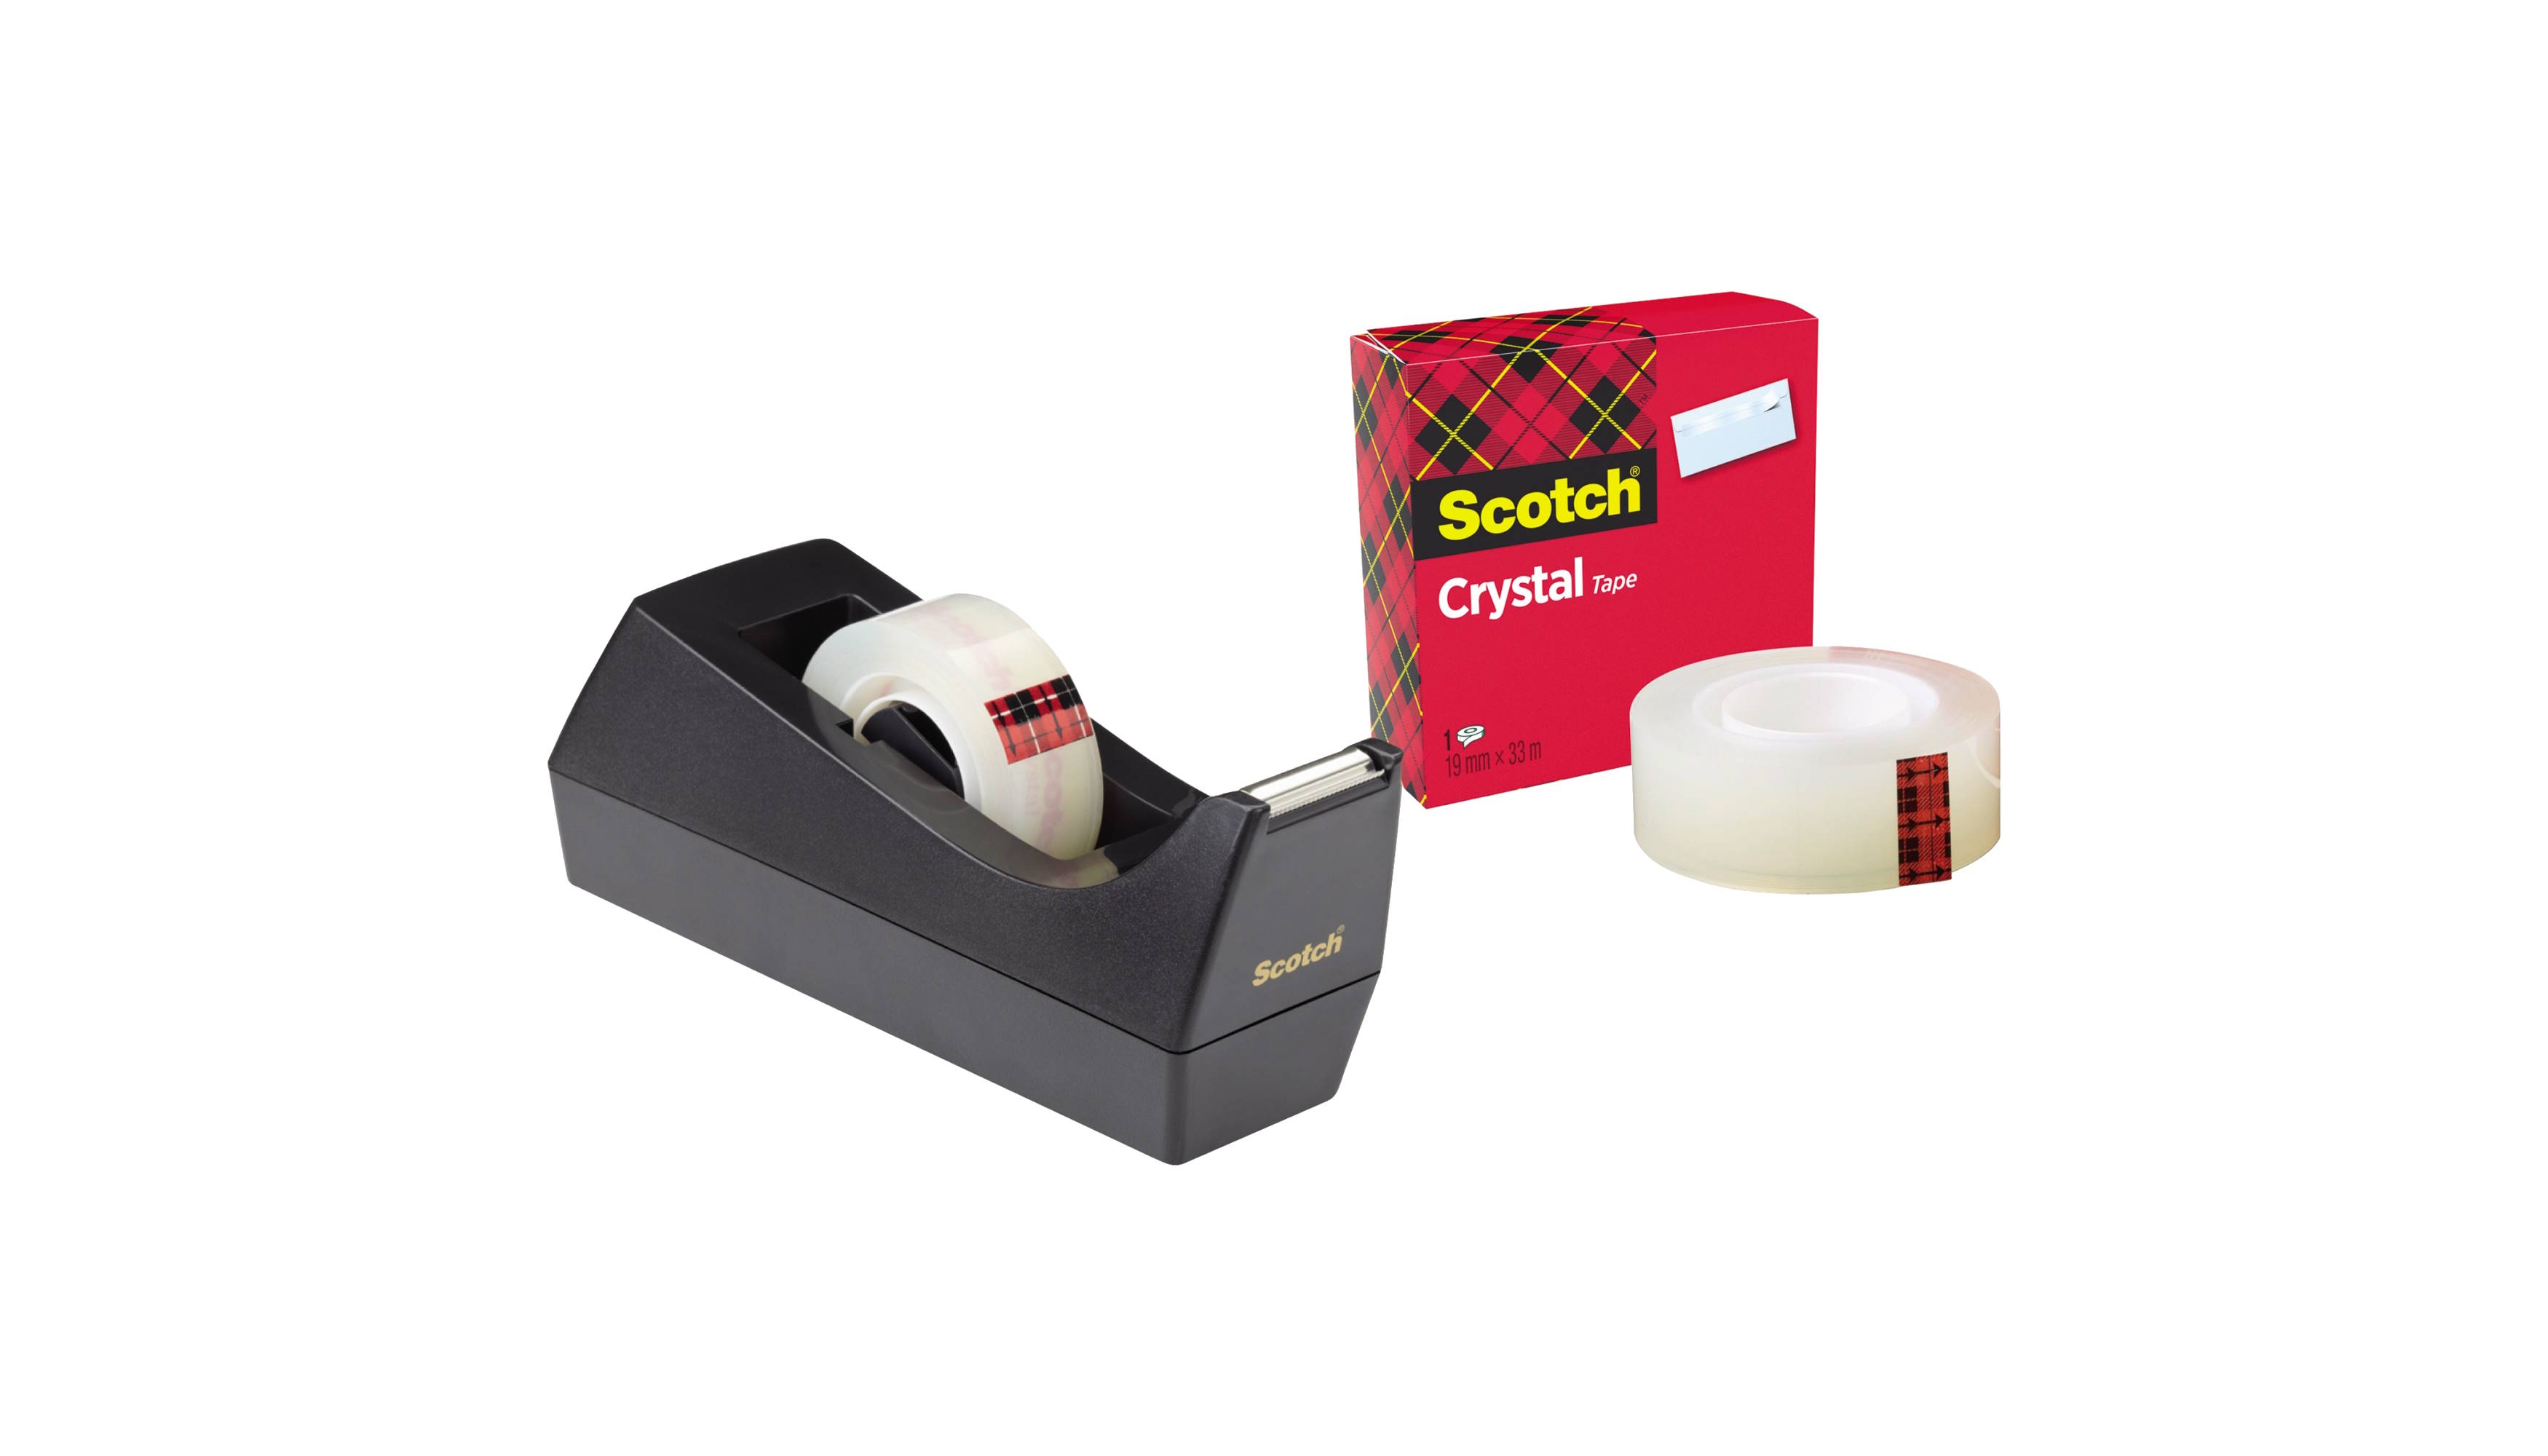 SCOTCH® Tischabroller Sparset C38 schwarz inkl. 1 Rolle  Scotch® Crystal Klebefilm 600